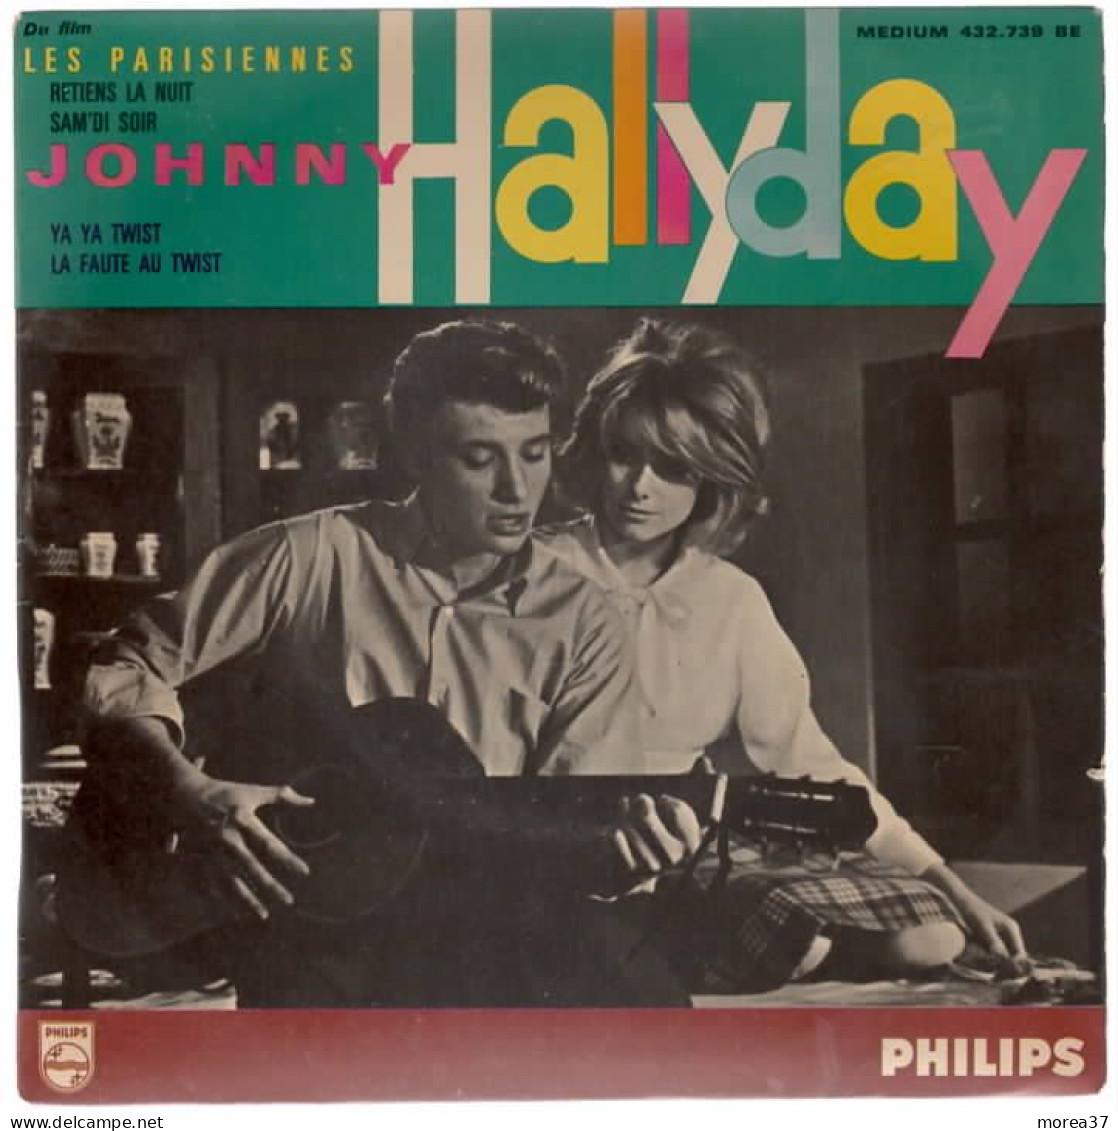 JOHNNY HALLYDAY  Retiens La Nuit    Du Film LES PARISIENNES    PHILIPS  432 .739 BE - Otros - Canción Francesa